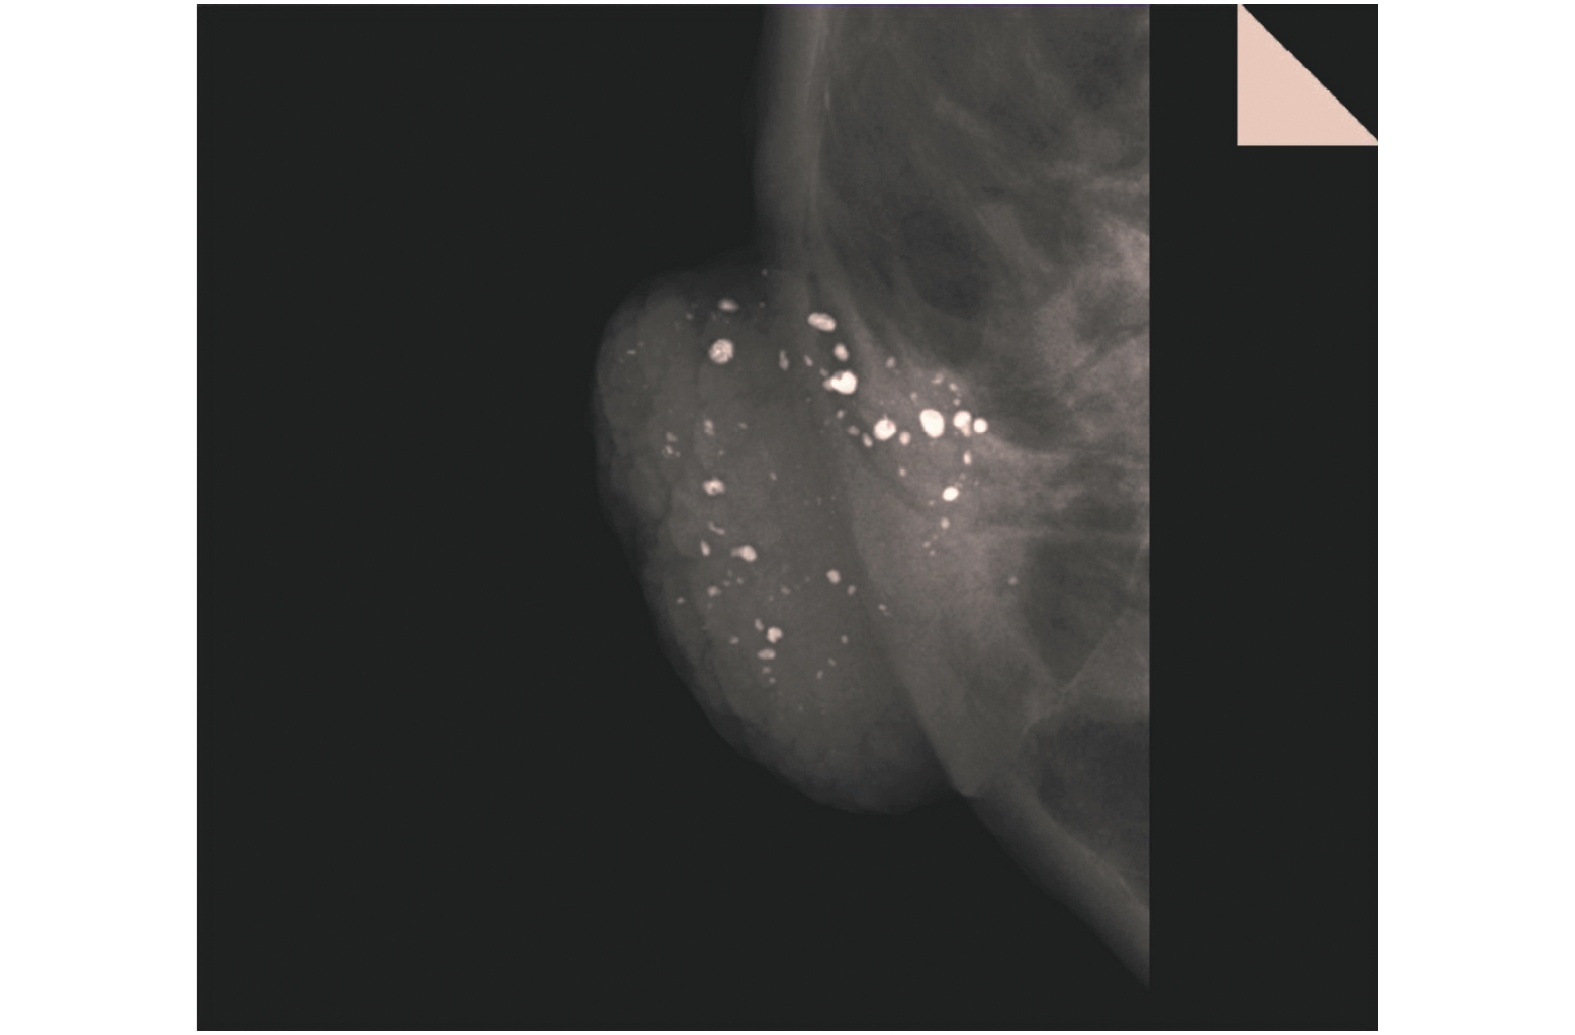 【2018 红点奖】MAMMOMAT Revelation / 乳房X射线摄影系统 - 普象网